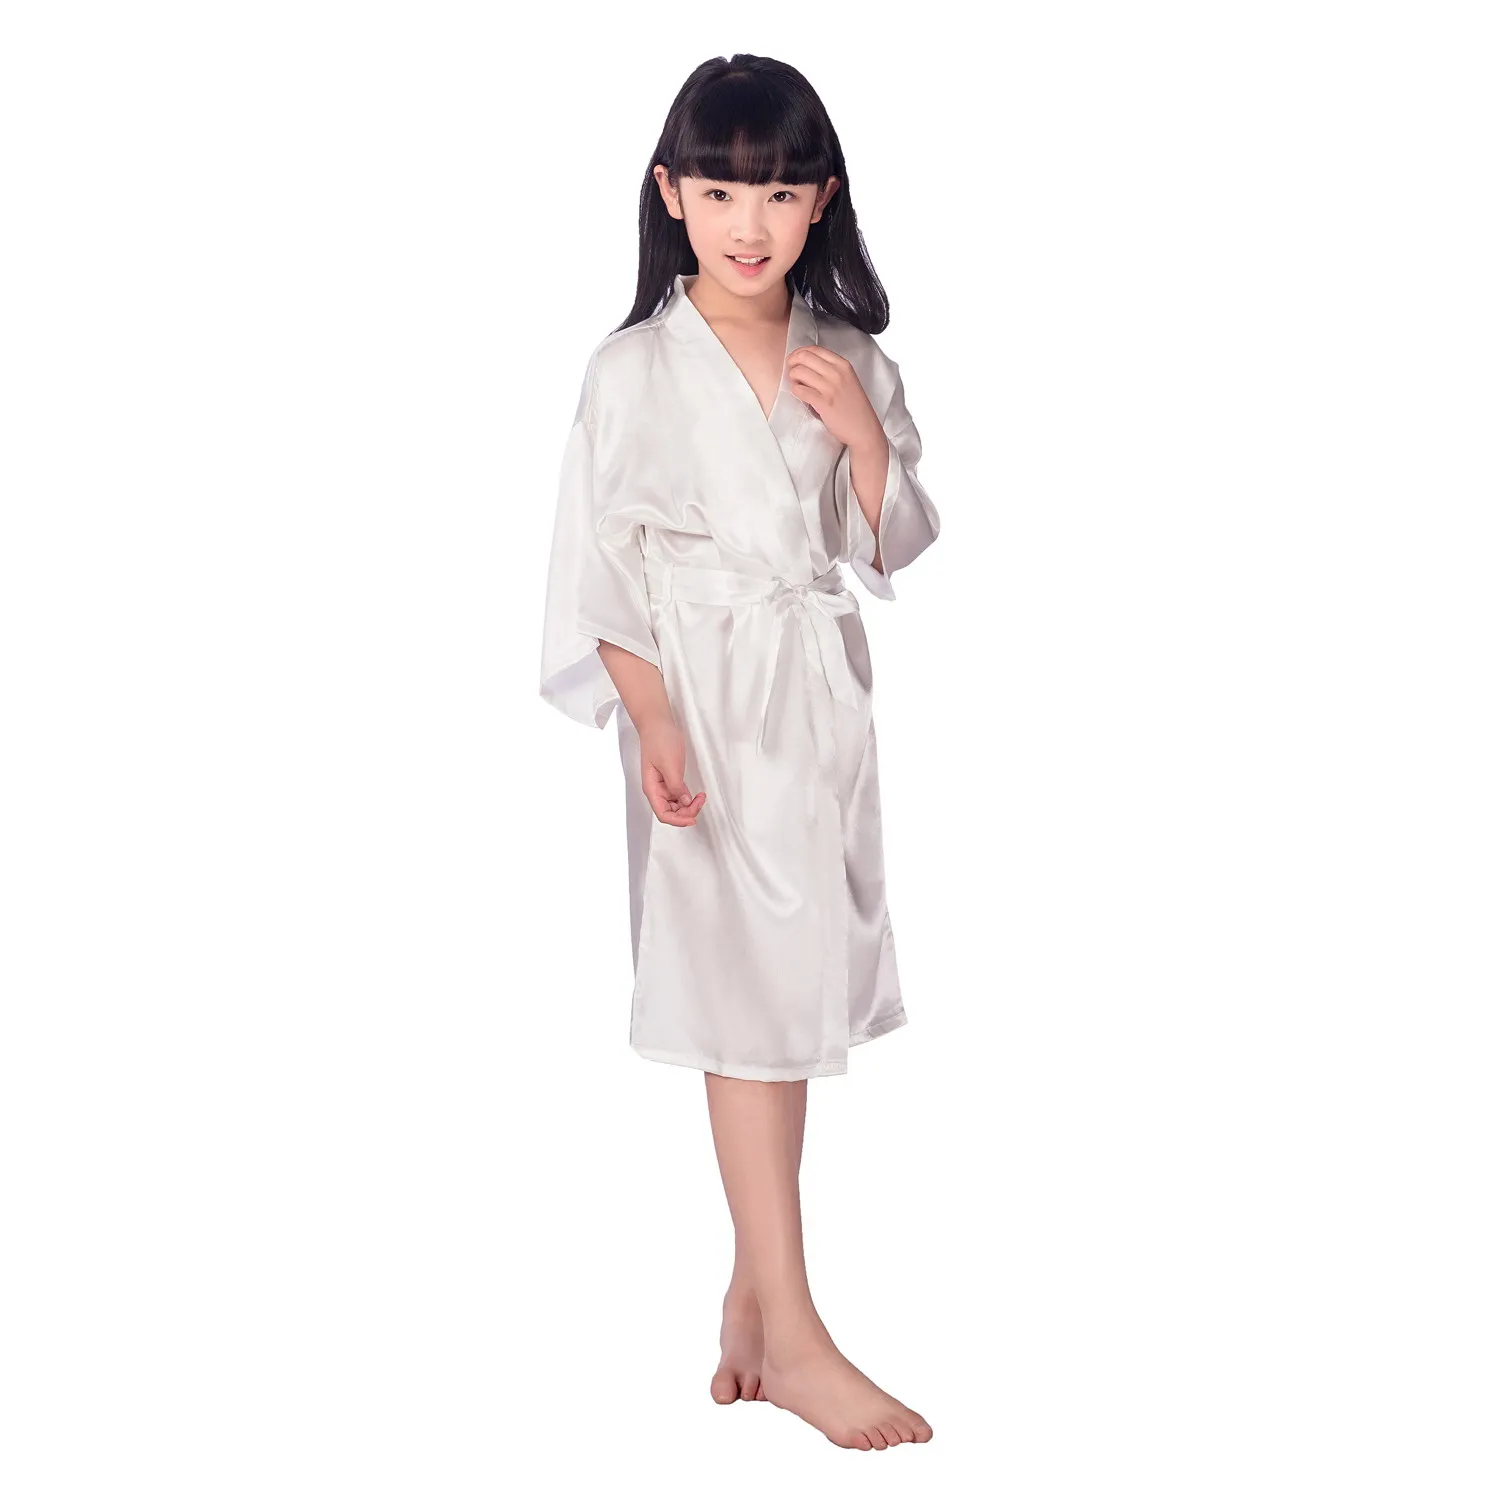 2017 Yaz Kızlar Katı Rayon Ipek Robe Pijama Lingerie Gecelik Pijama Saten Kimono Kıyafeti PJS Bornoz Kadın Elbise 6 adet / grup # 4027